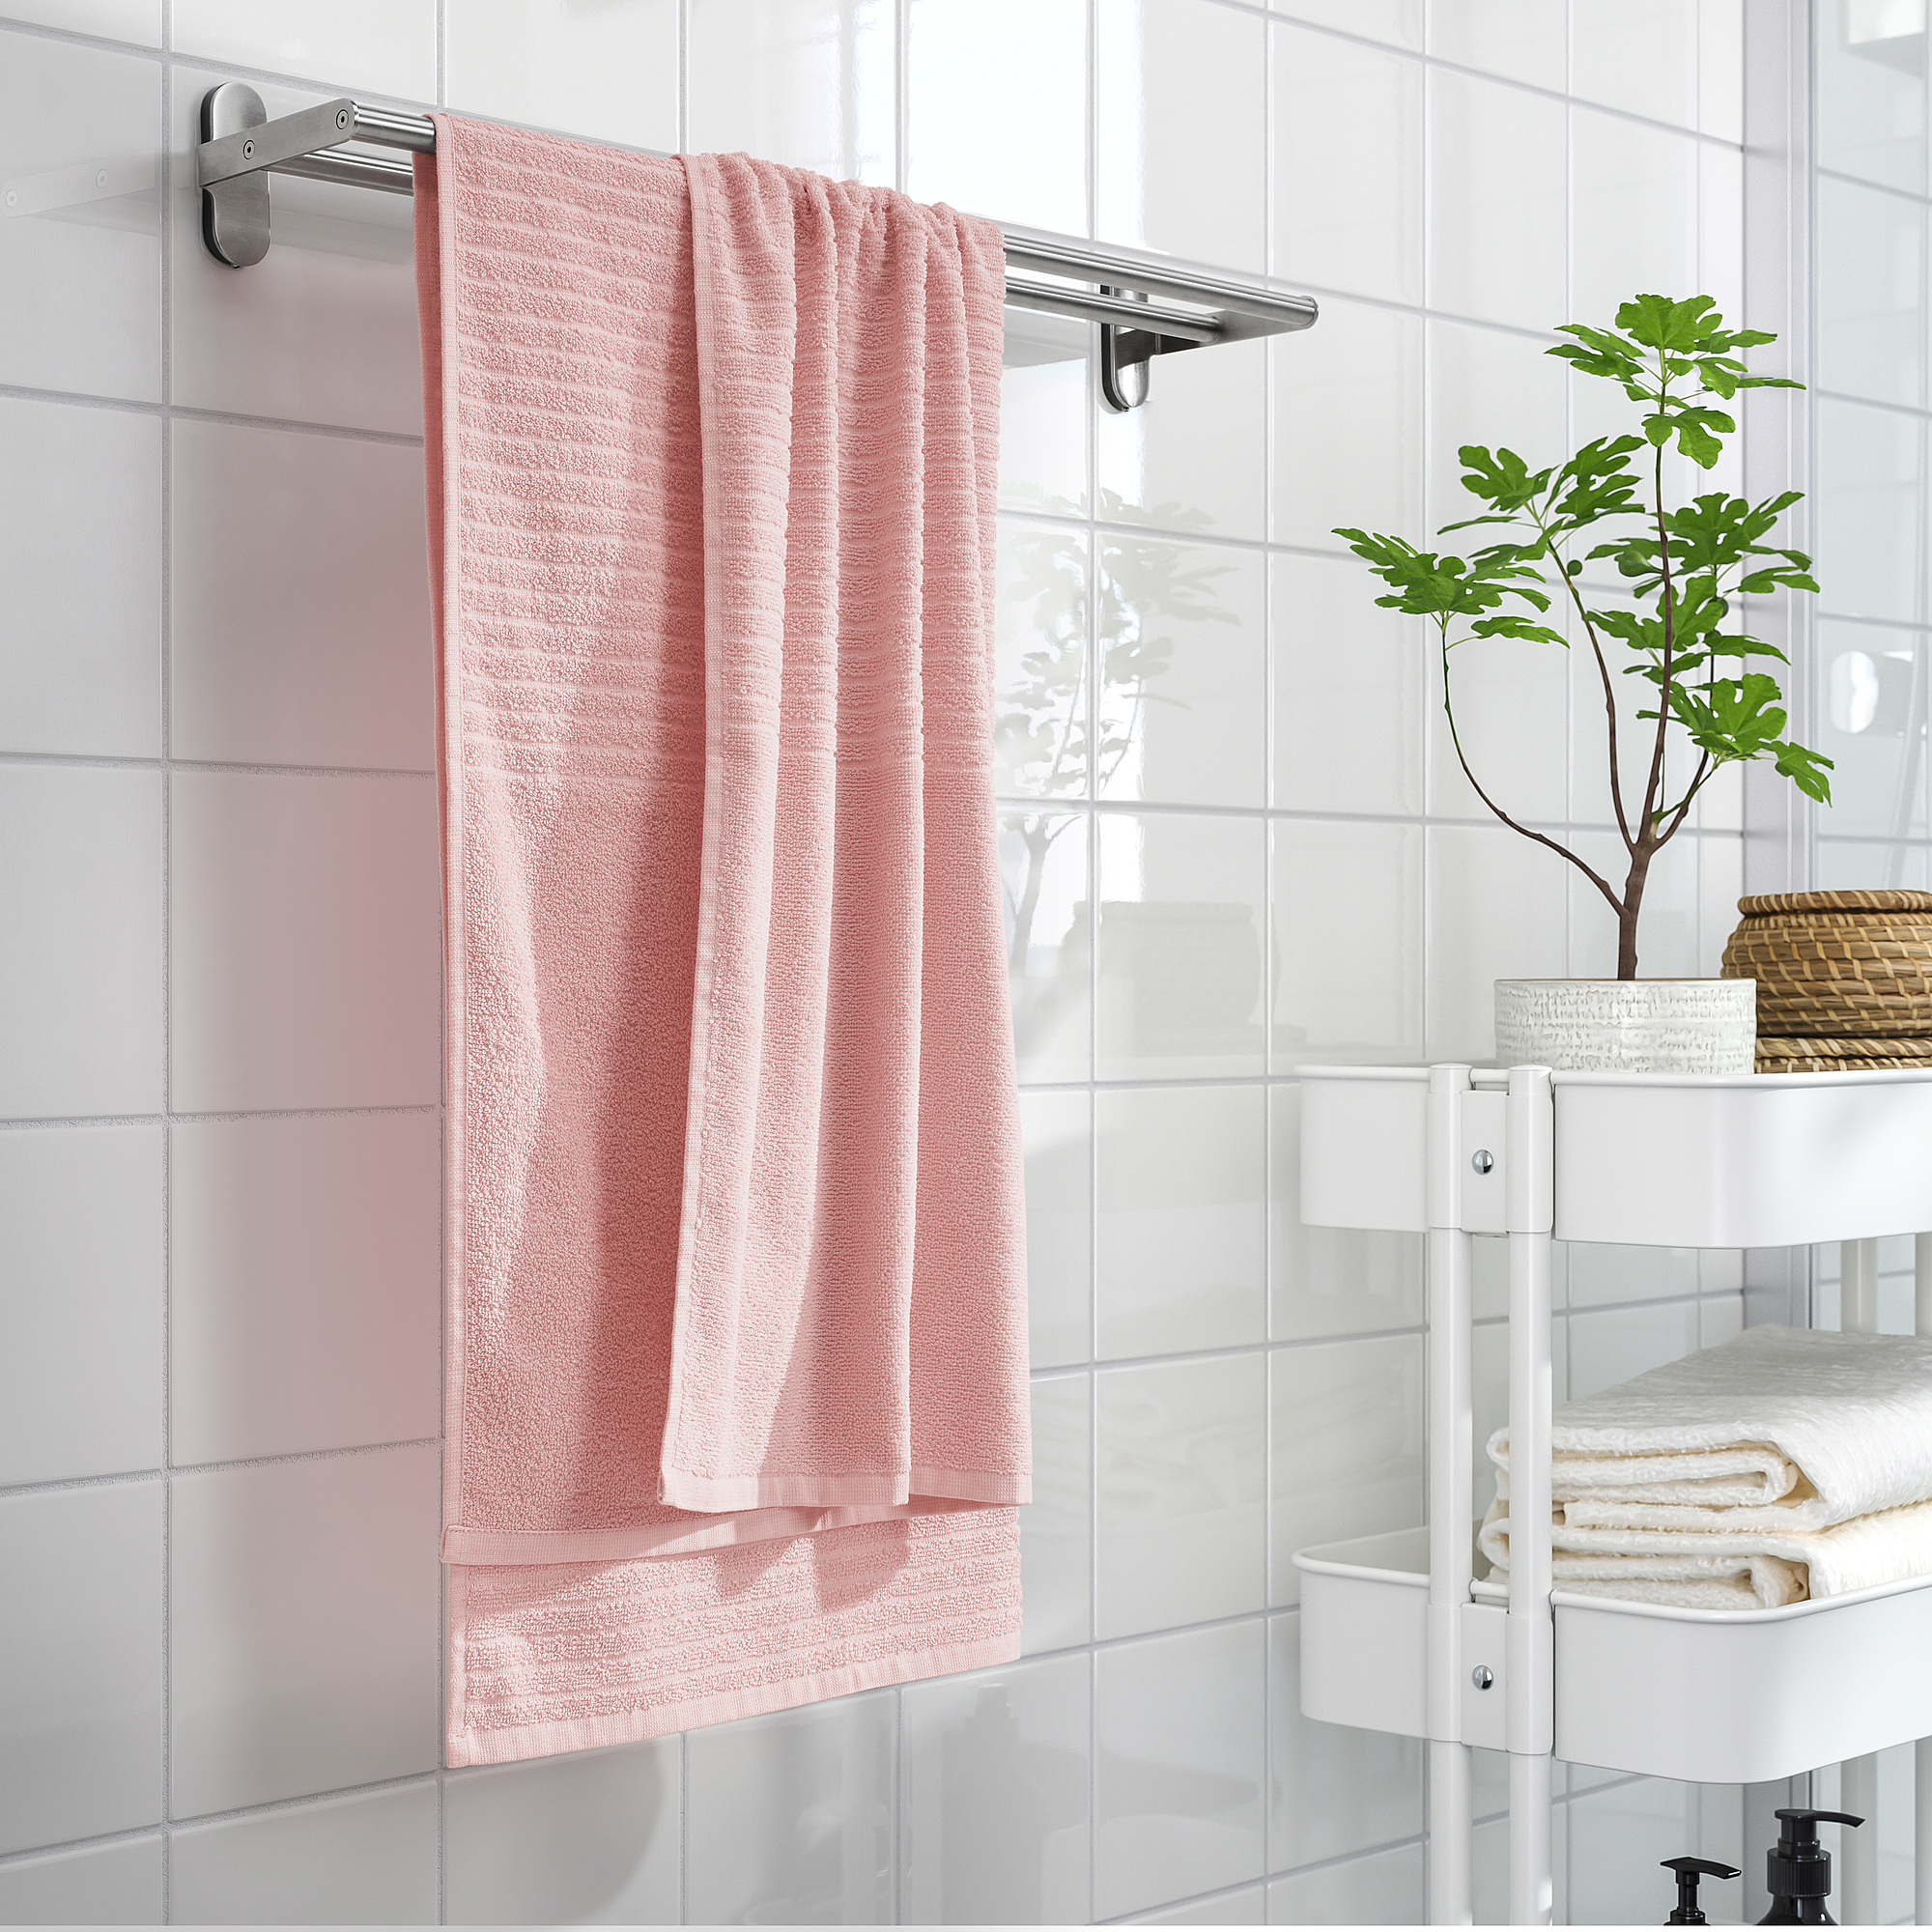 VÅGSJÖN bath towel